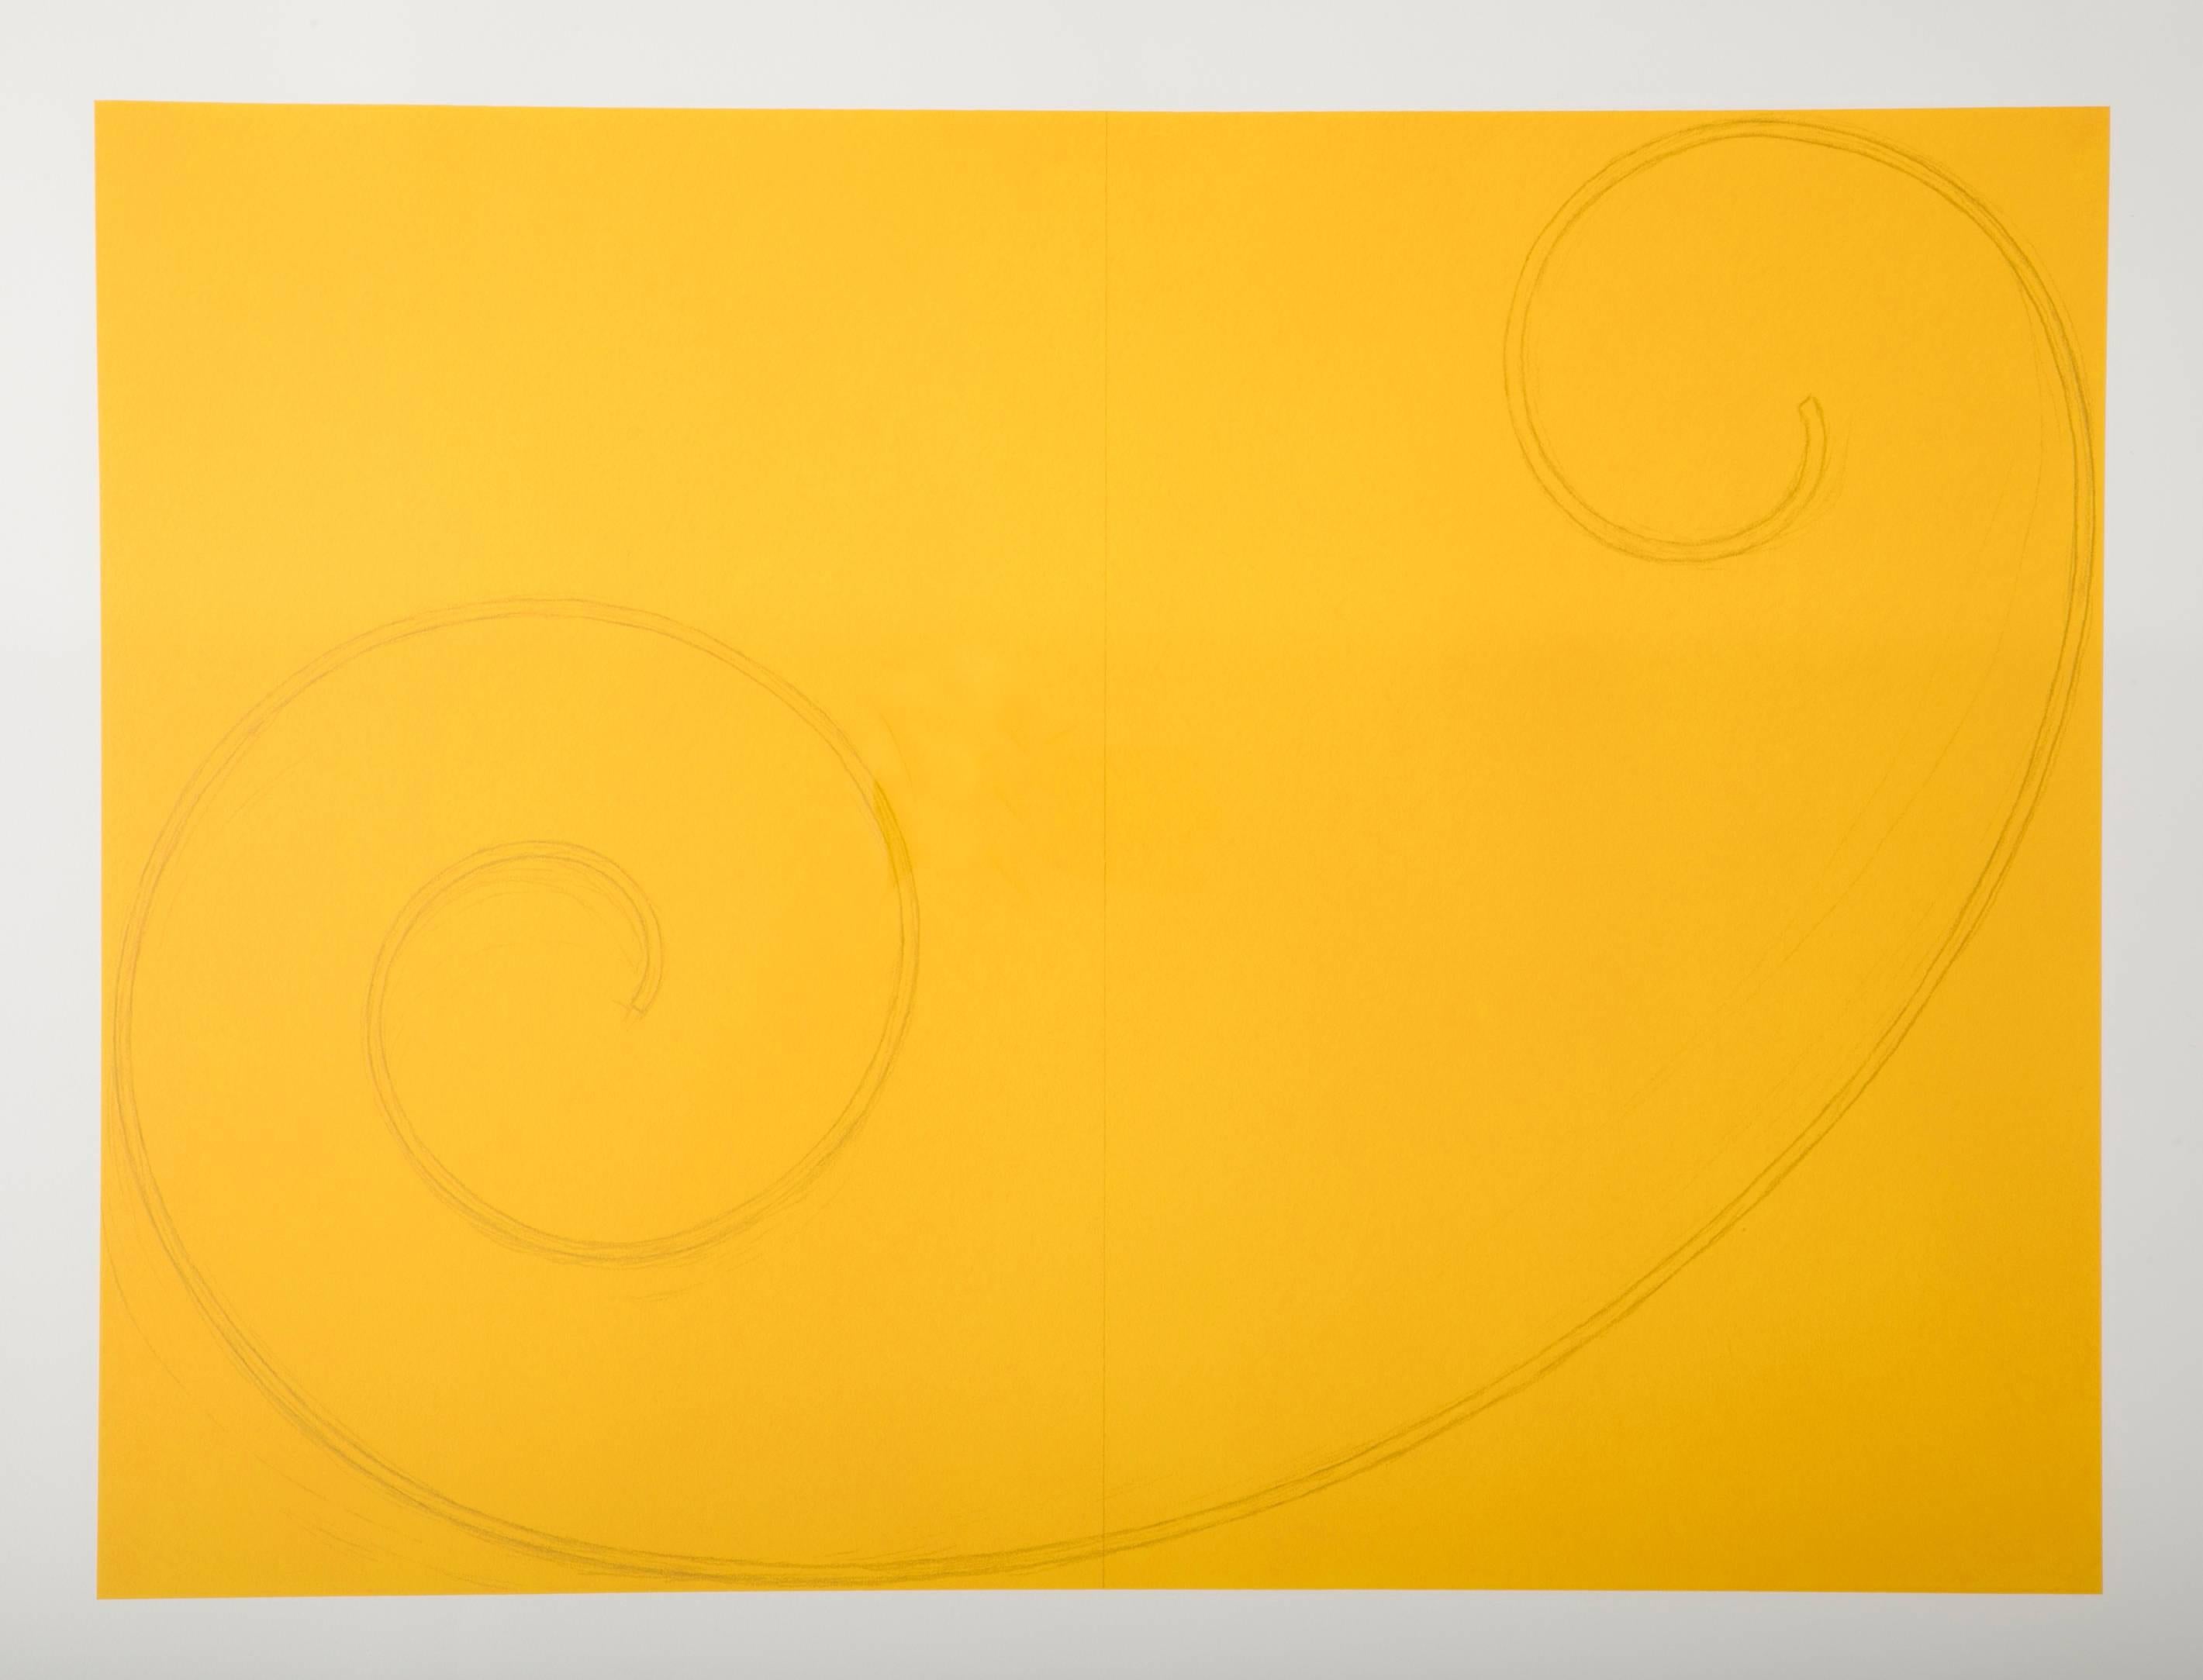 Figure jaune frisée une sérigraphie de Robert Mangold. Produit par Pace Editions, New York, 2002. Signé et numéroté 10/10 au crayon. Feuille entière. 29 3/8